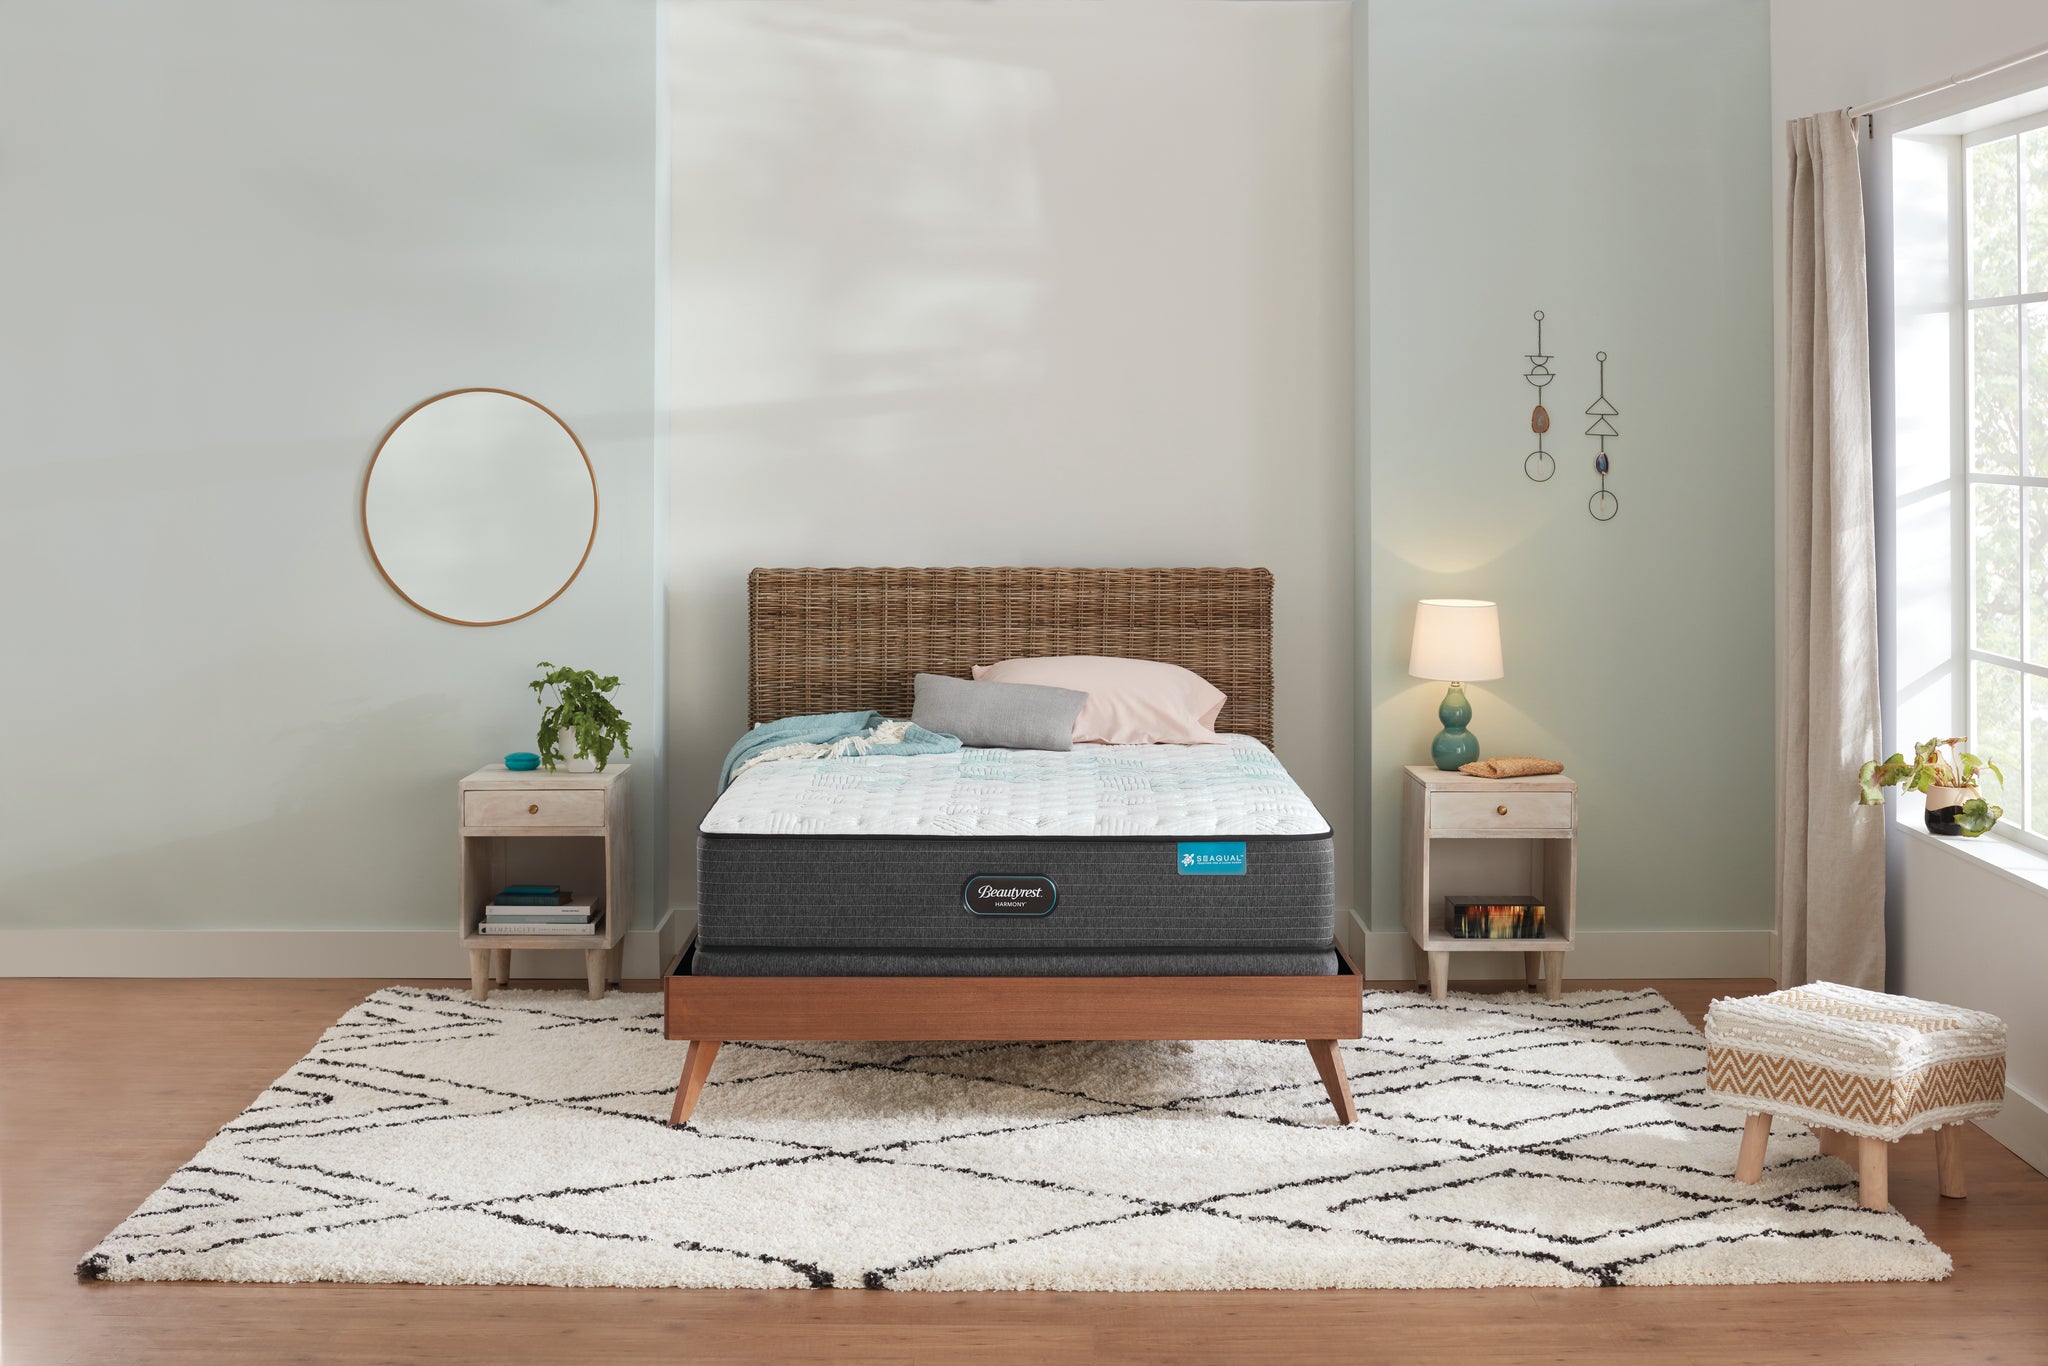 beautyrest cayman extra firm mattress